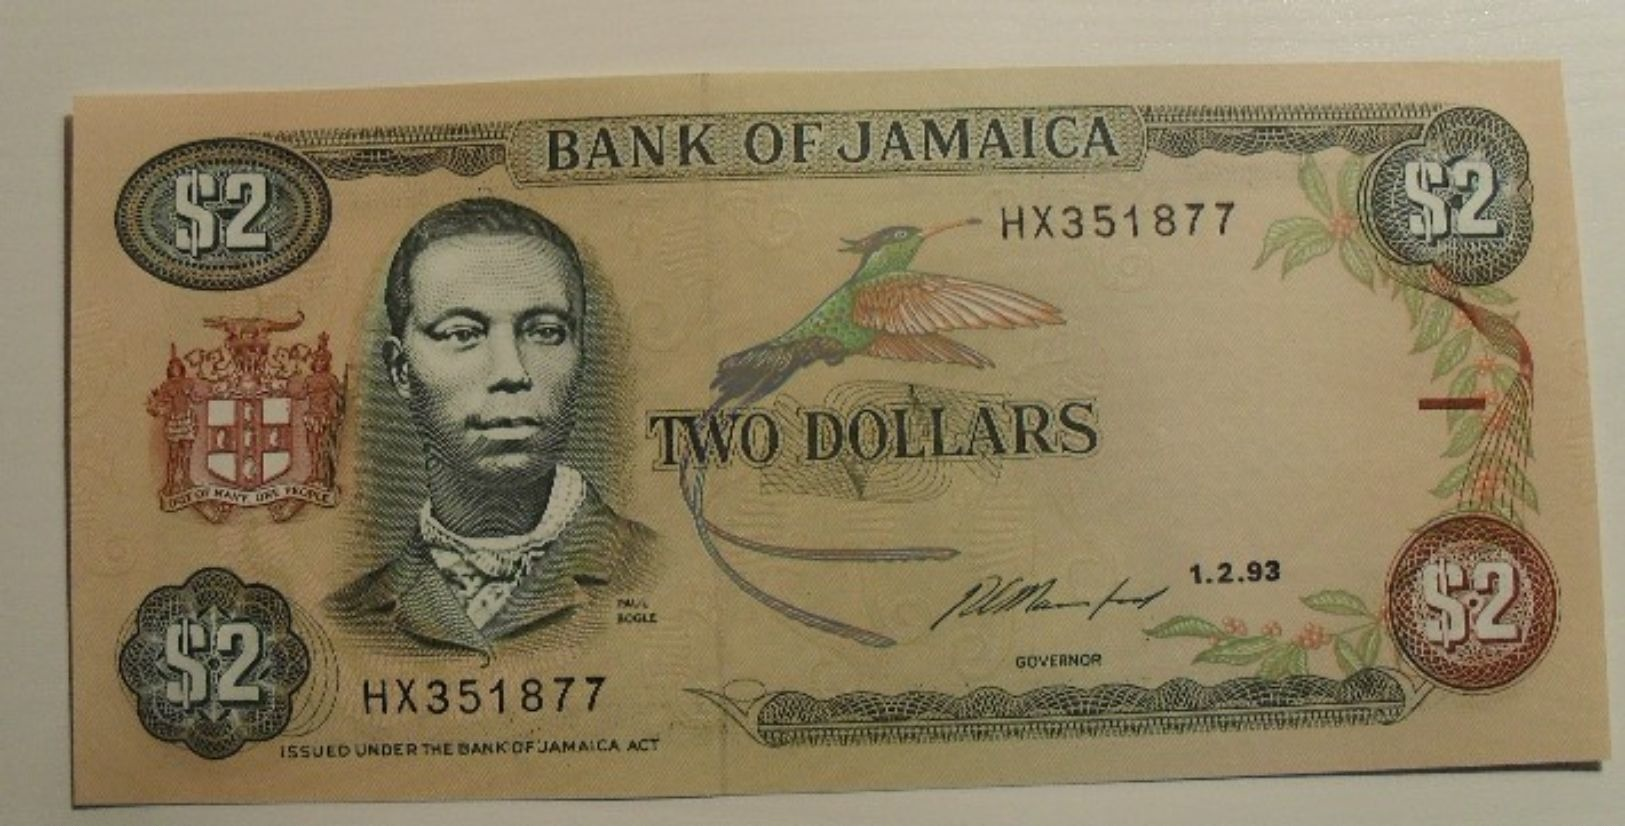 1993 - Jamaique - Jamaica - TWO DOLLARS - 1.2.93 - HX351877 - Jamaica